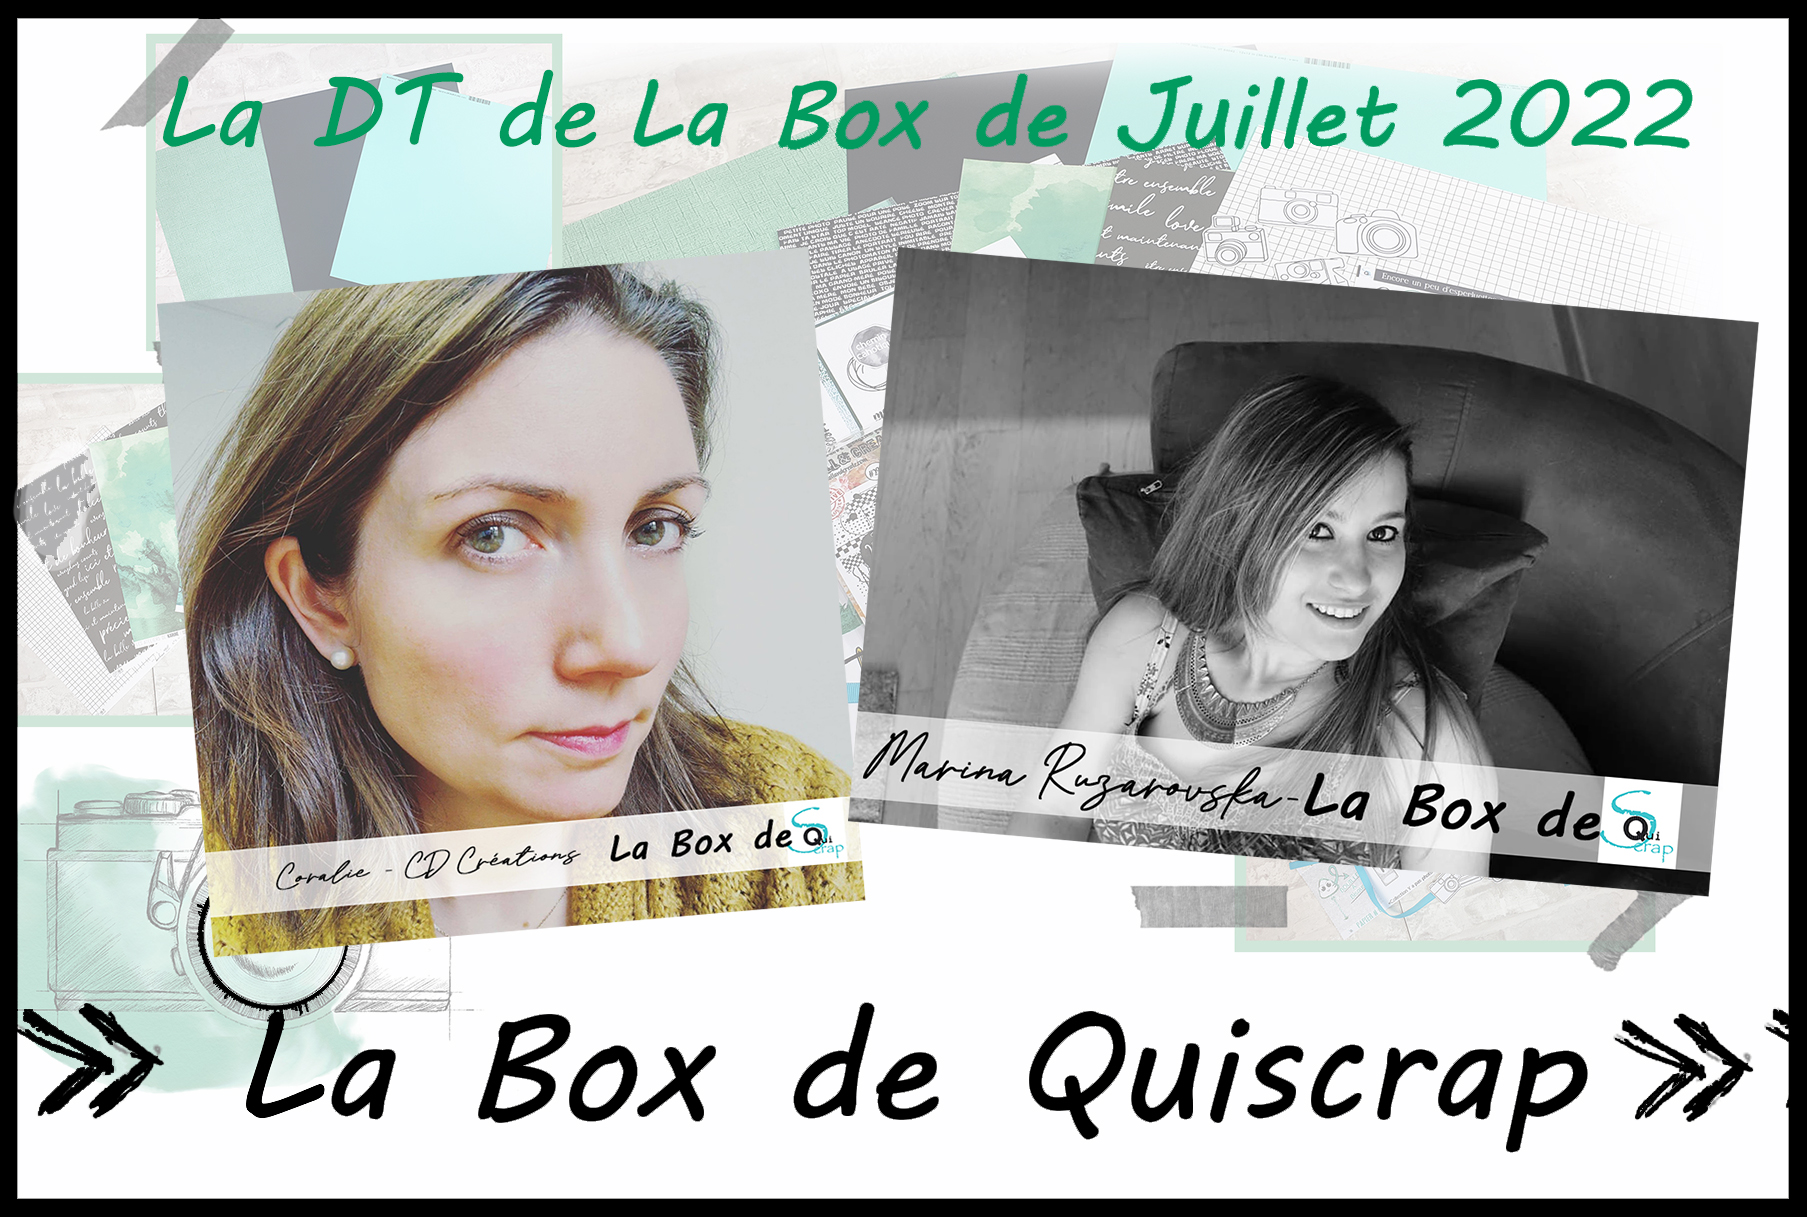 You are currently viewing Les Invitées Créatives de la Box de Juillet, Aout et Septembre 2022 sont Marina Ruzarovska et Coralie CD Créations